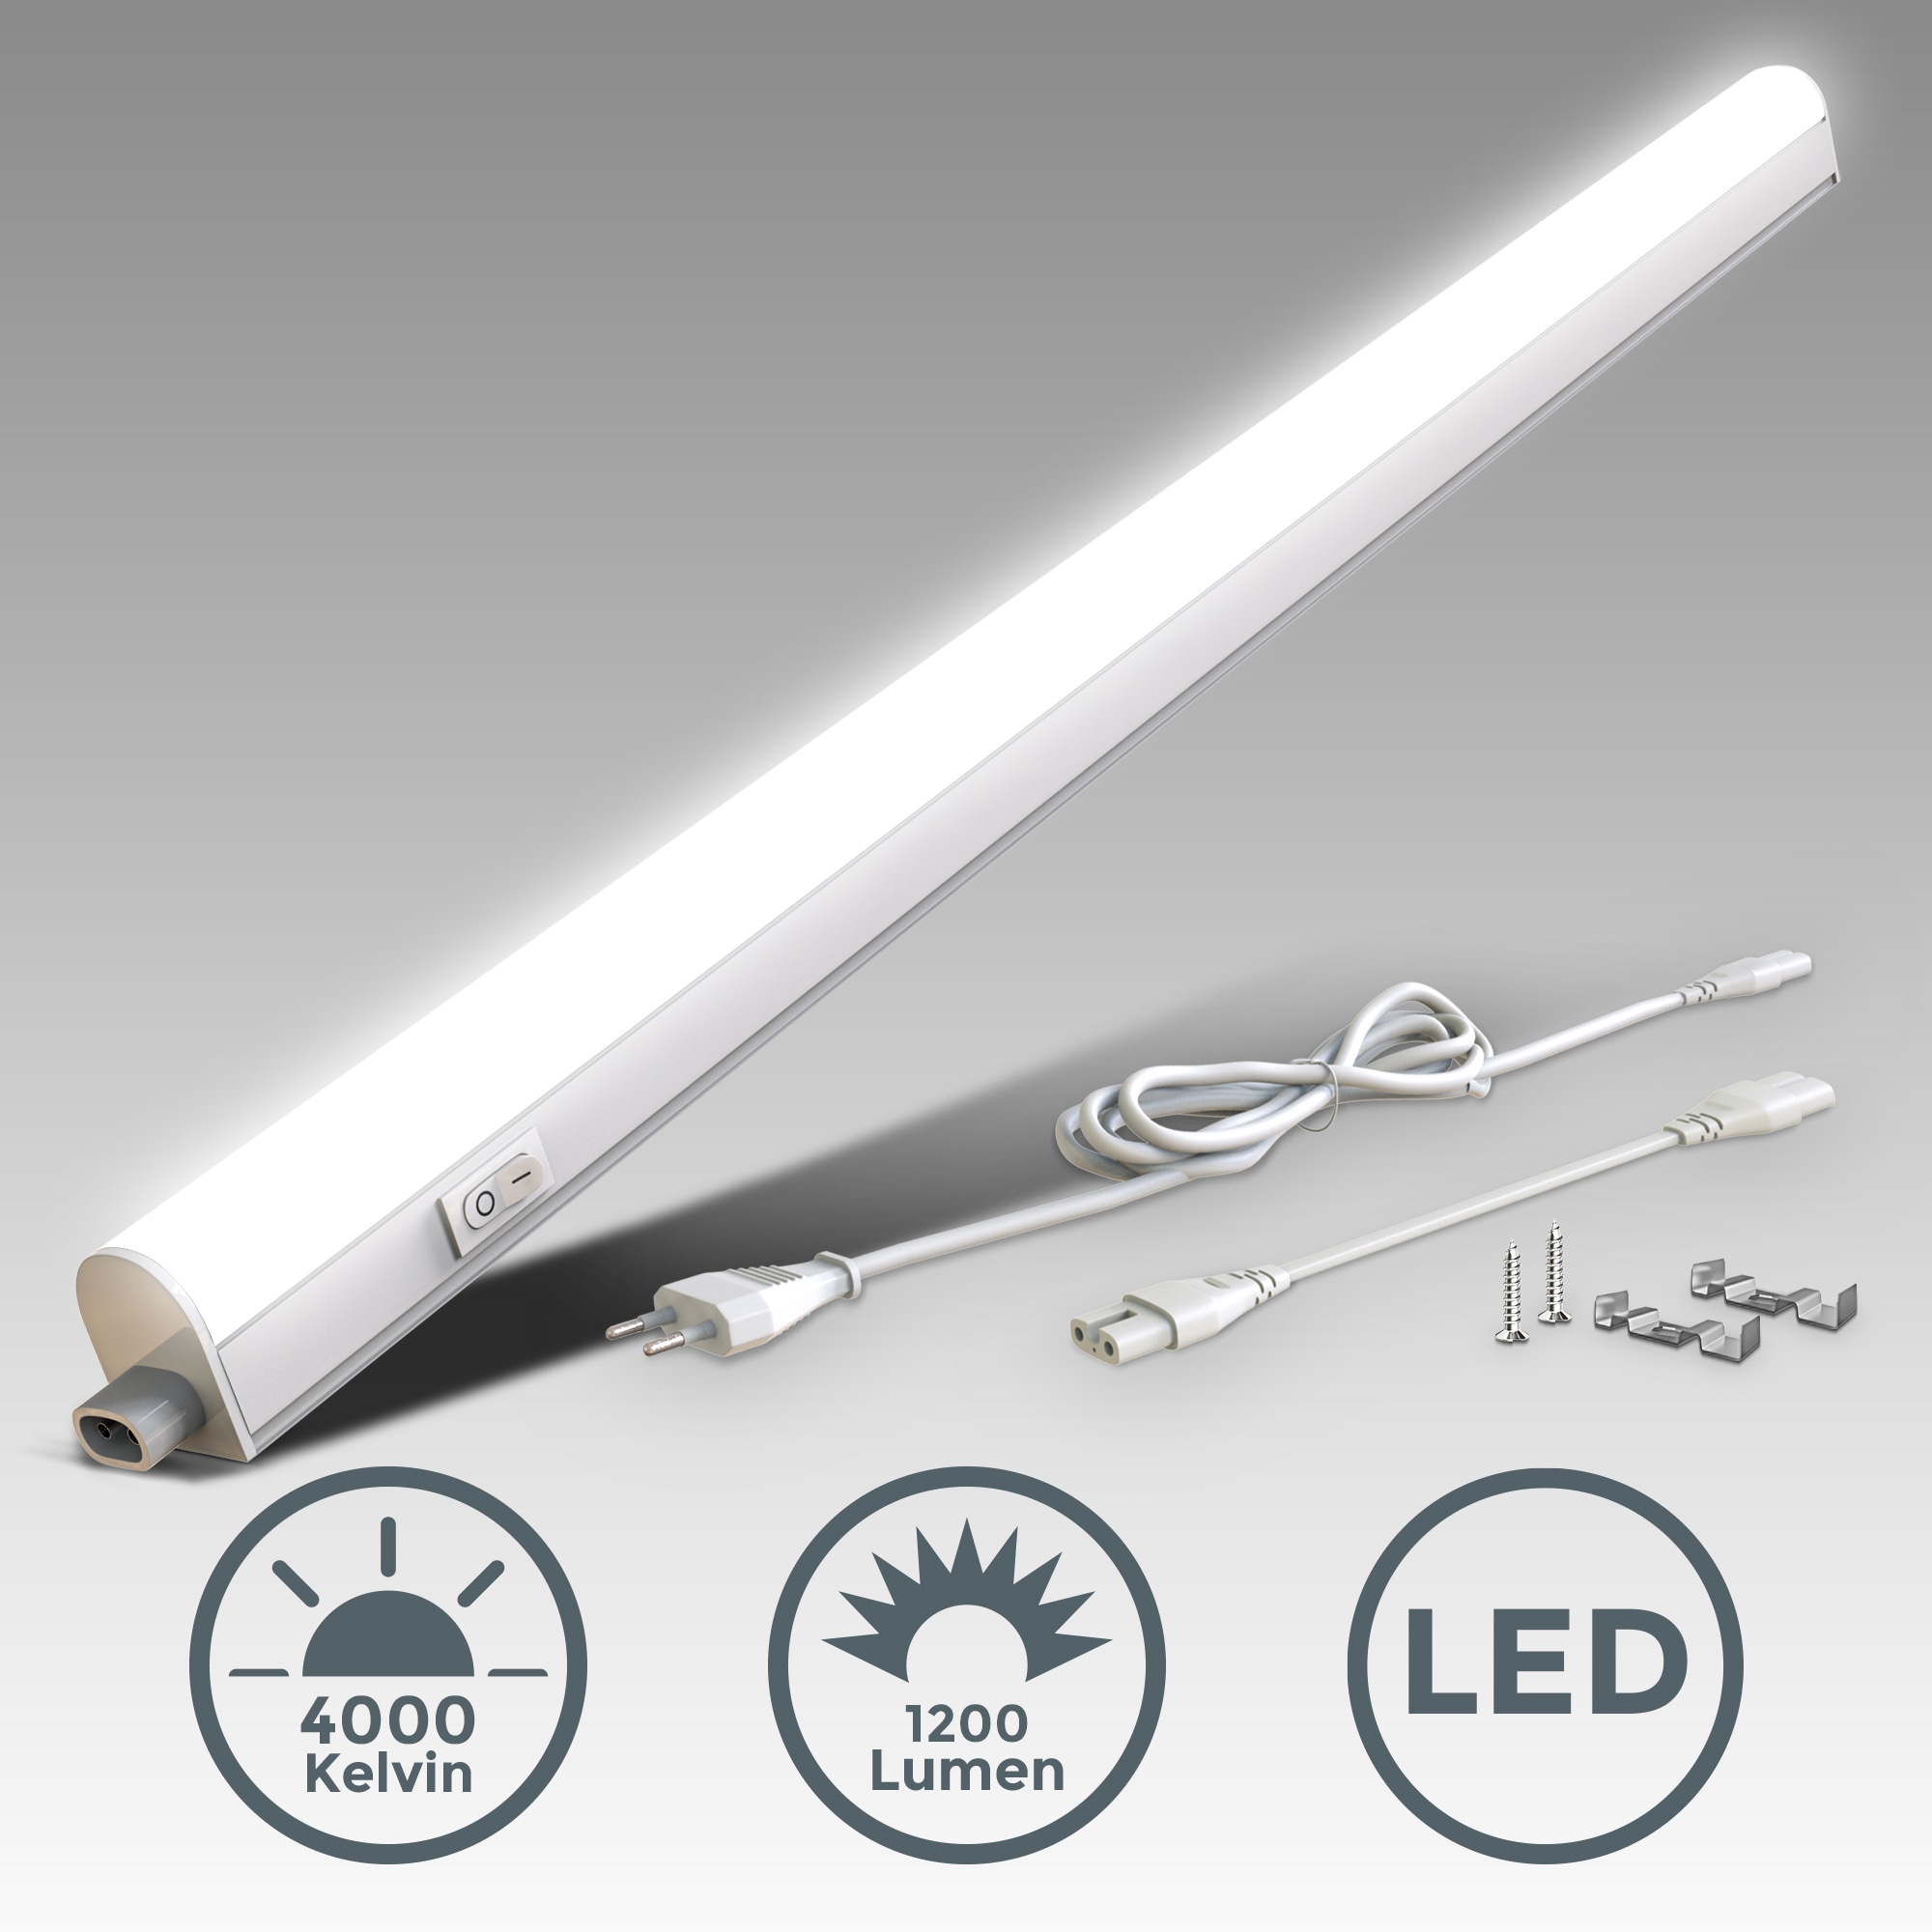 B.K.Licht LED Unterschrankleuchte, Kunststoff, weiß, inkl. 1 x LED-Platine,  15 Watt, 1.200 Lumen, 4.000 Kelvin, nicht dimmbar, inkl. Ein-/Aus-Schalter,  inkl. Zuleitung 1,8m kaufen bei OTTO